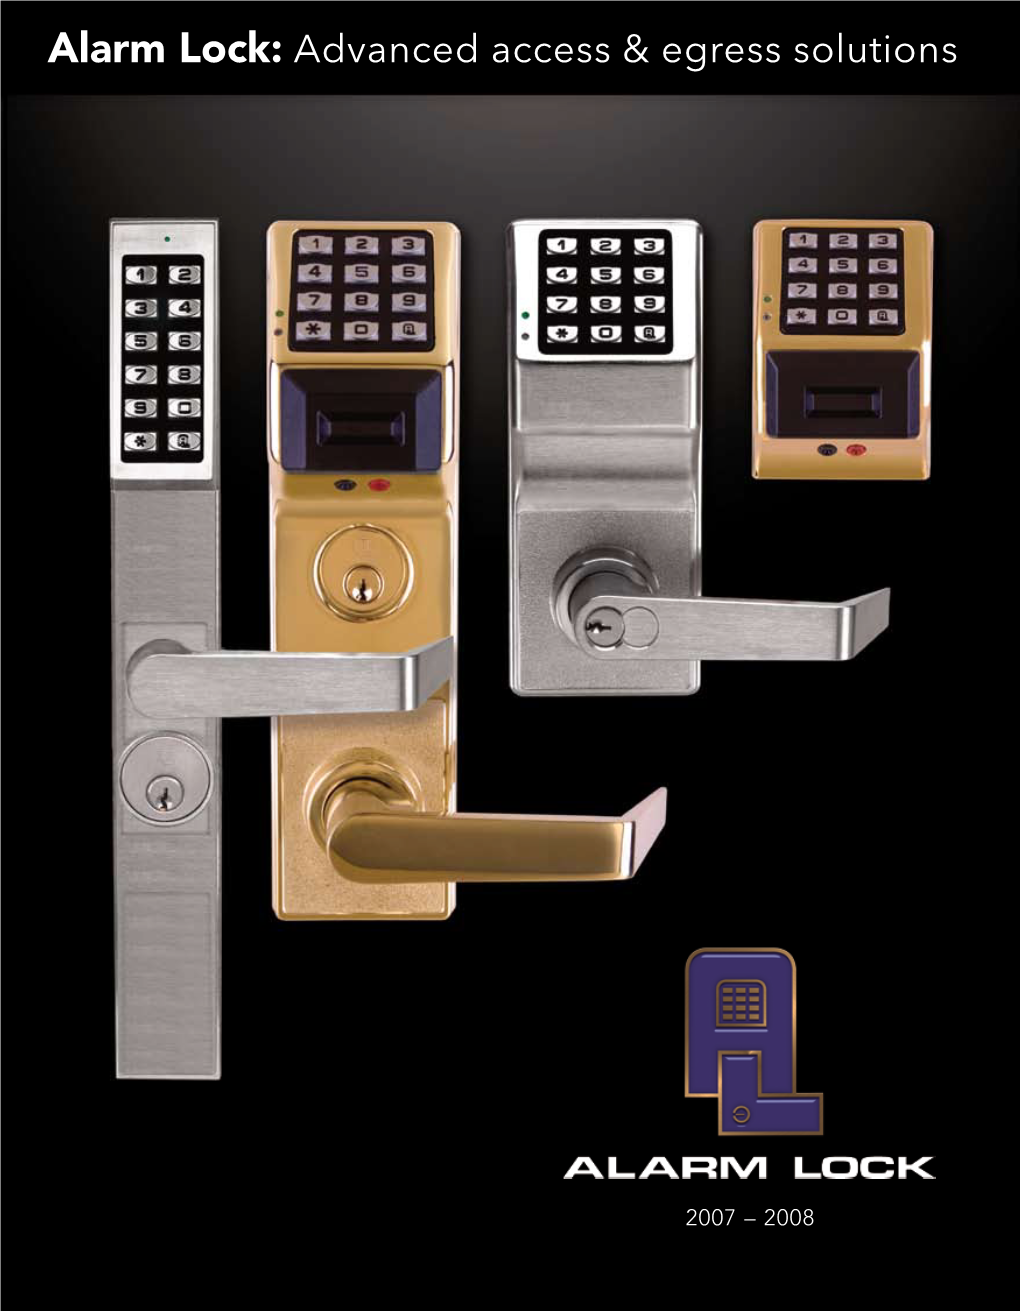 Alarm Lock: Advanced Access & Egress Solutions